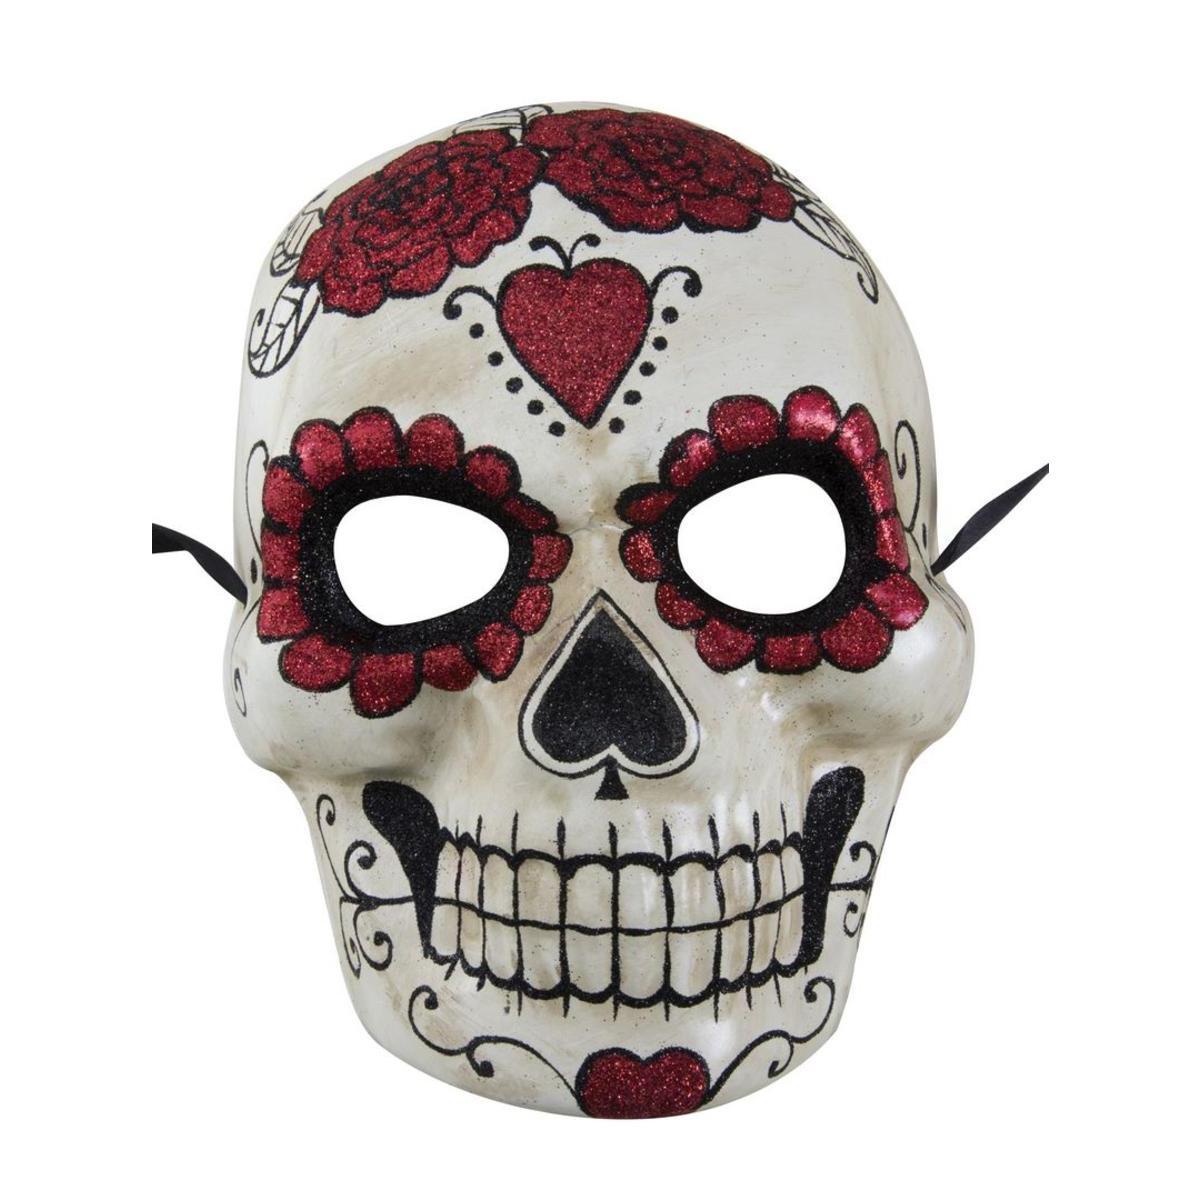 Masque du Jour des Morts - Taille adulte unique - Différents modèles - Rouge, noir, blanc